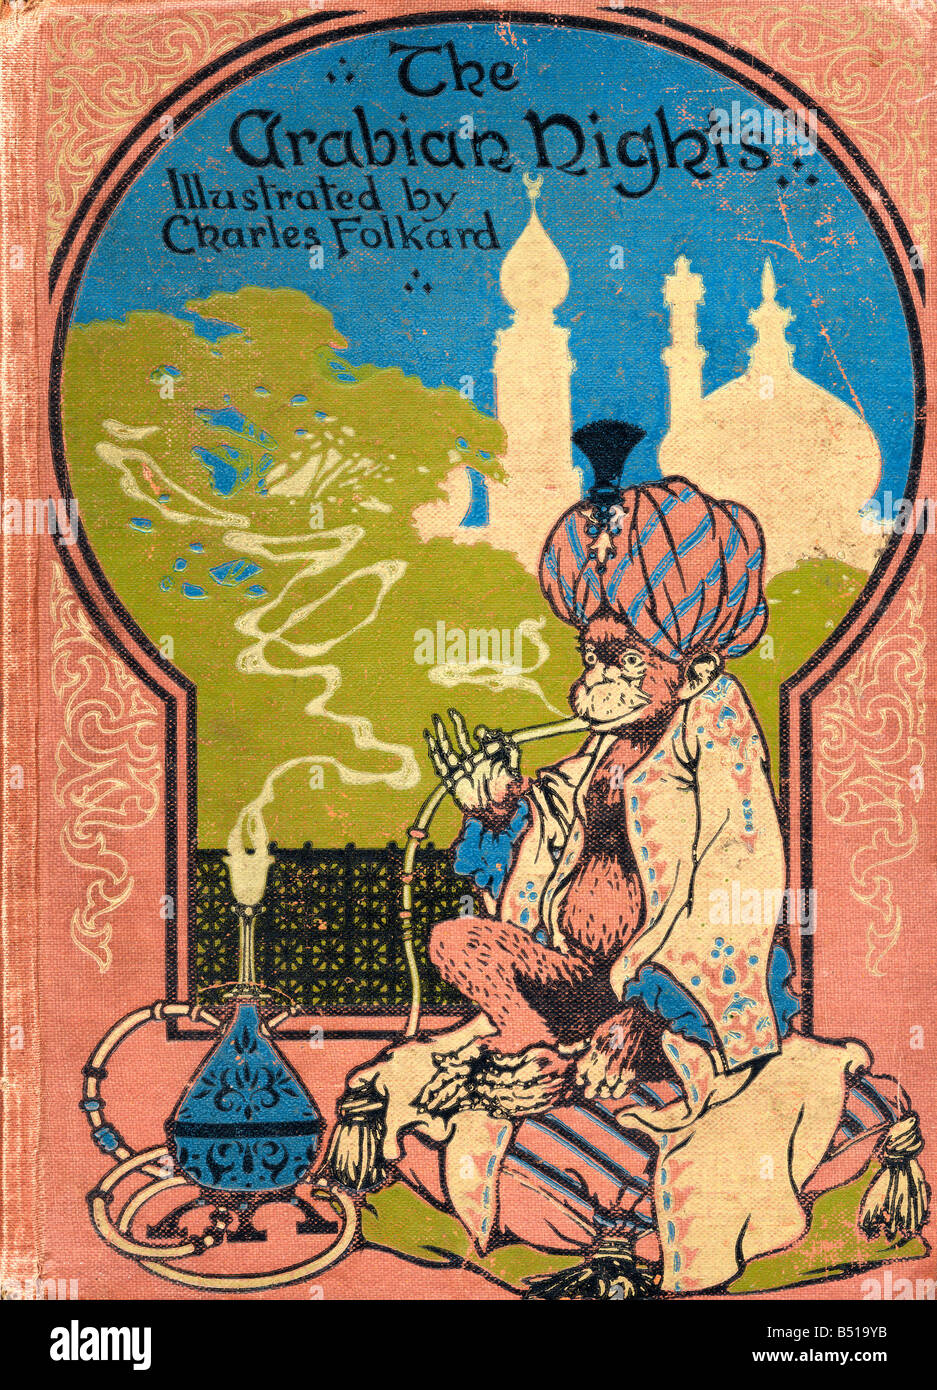 Vordere Abdeckung Illustration von Charles Folkard aus dem Buch The Arabian Nights veröffentlicht 1917 Stockfoto